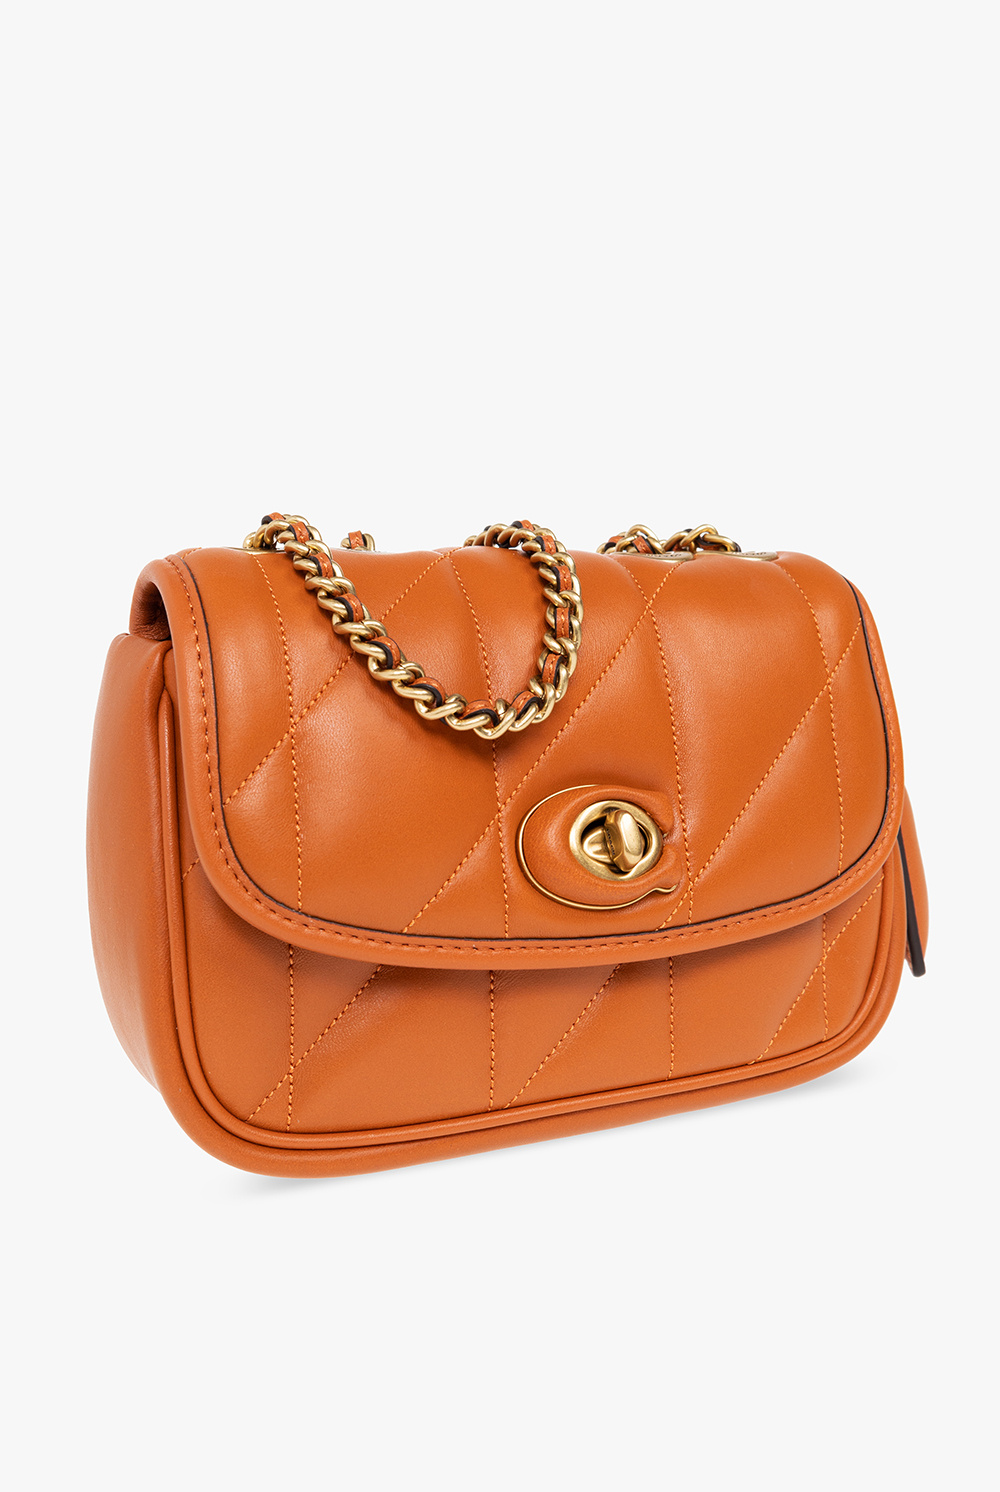 🎀THINK PINK🎀 Brahmin Caroline Shoulder Bag 👑Price: $275 ‼️30